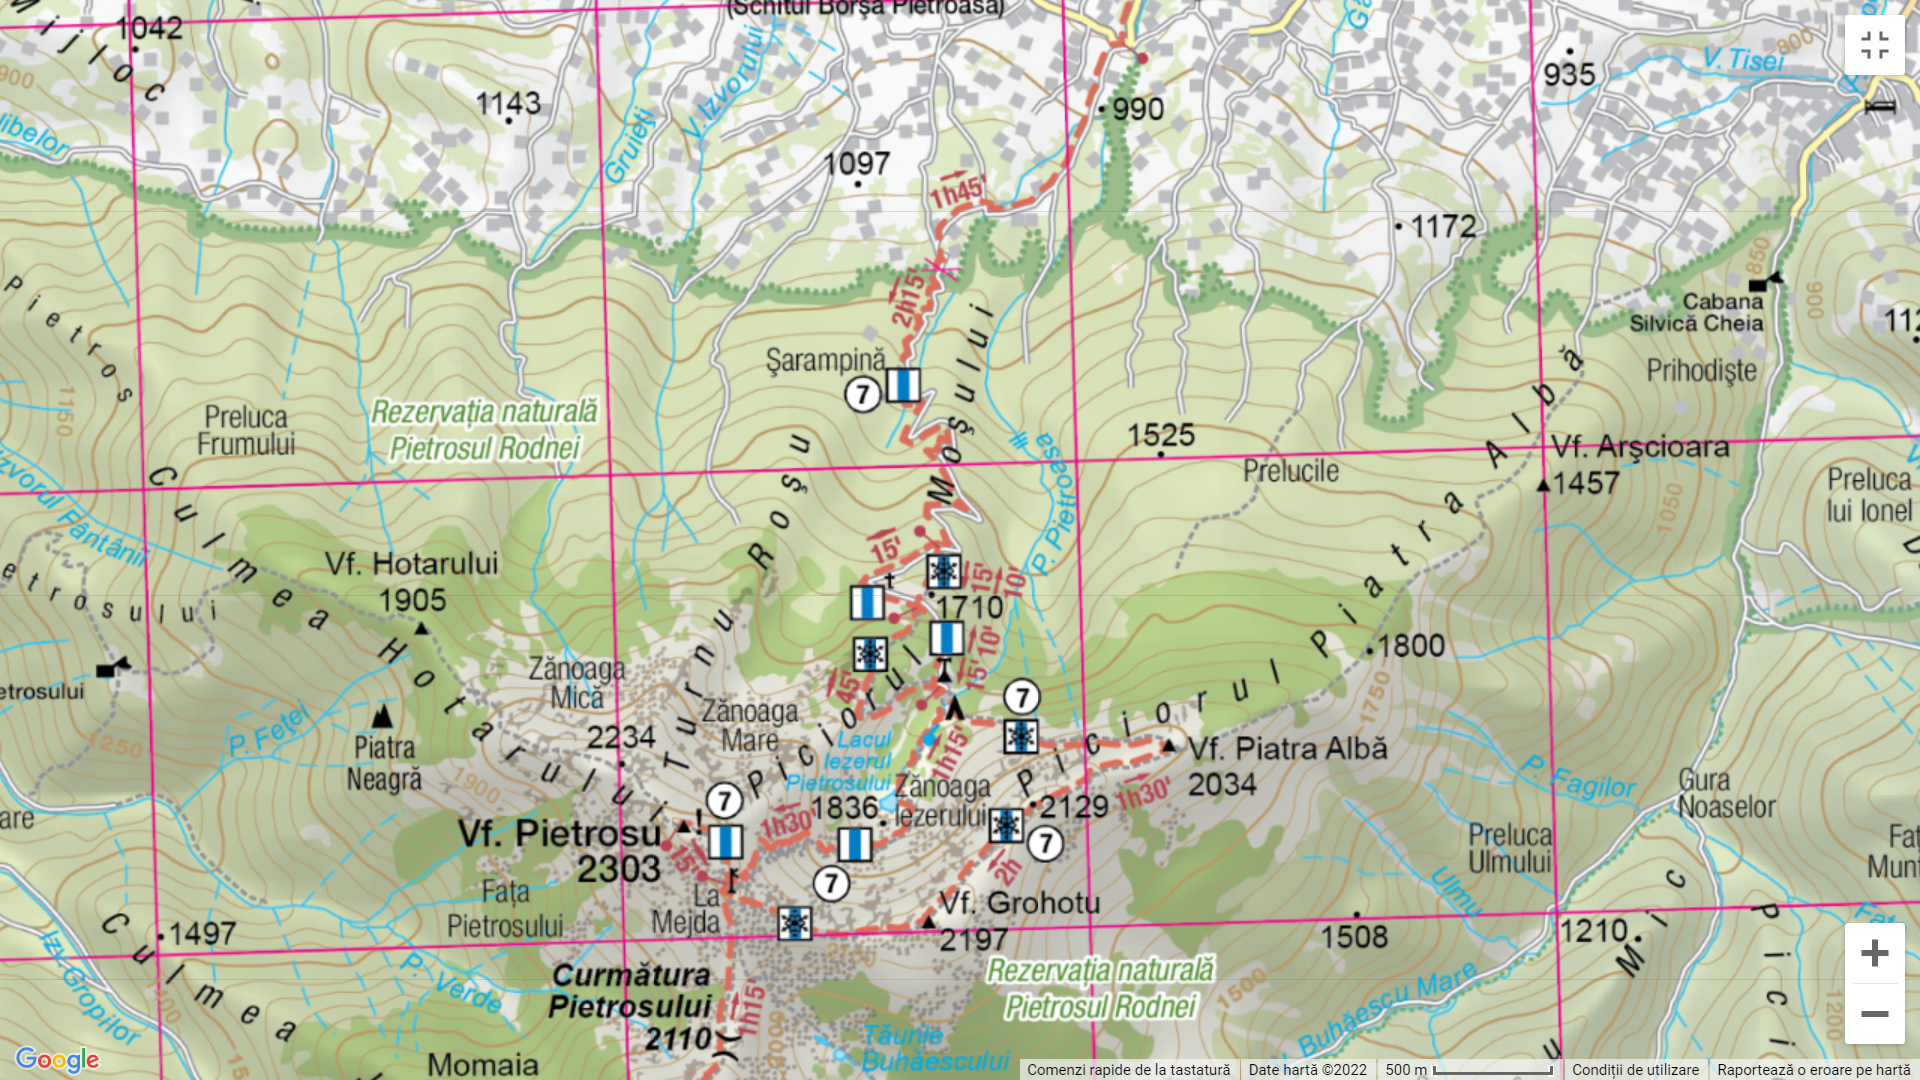  Traseul de iarnă Schitul Borșa - Pietrosul Rodnei - Harta Munții Noștri